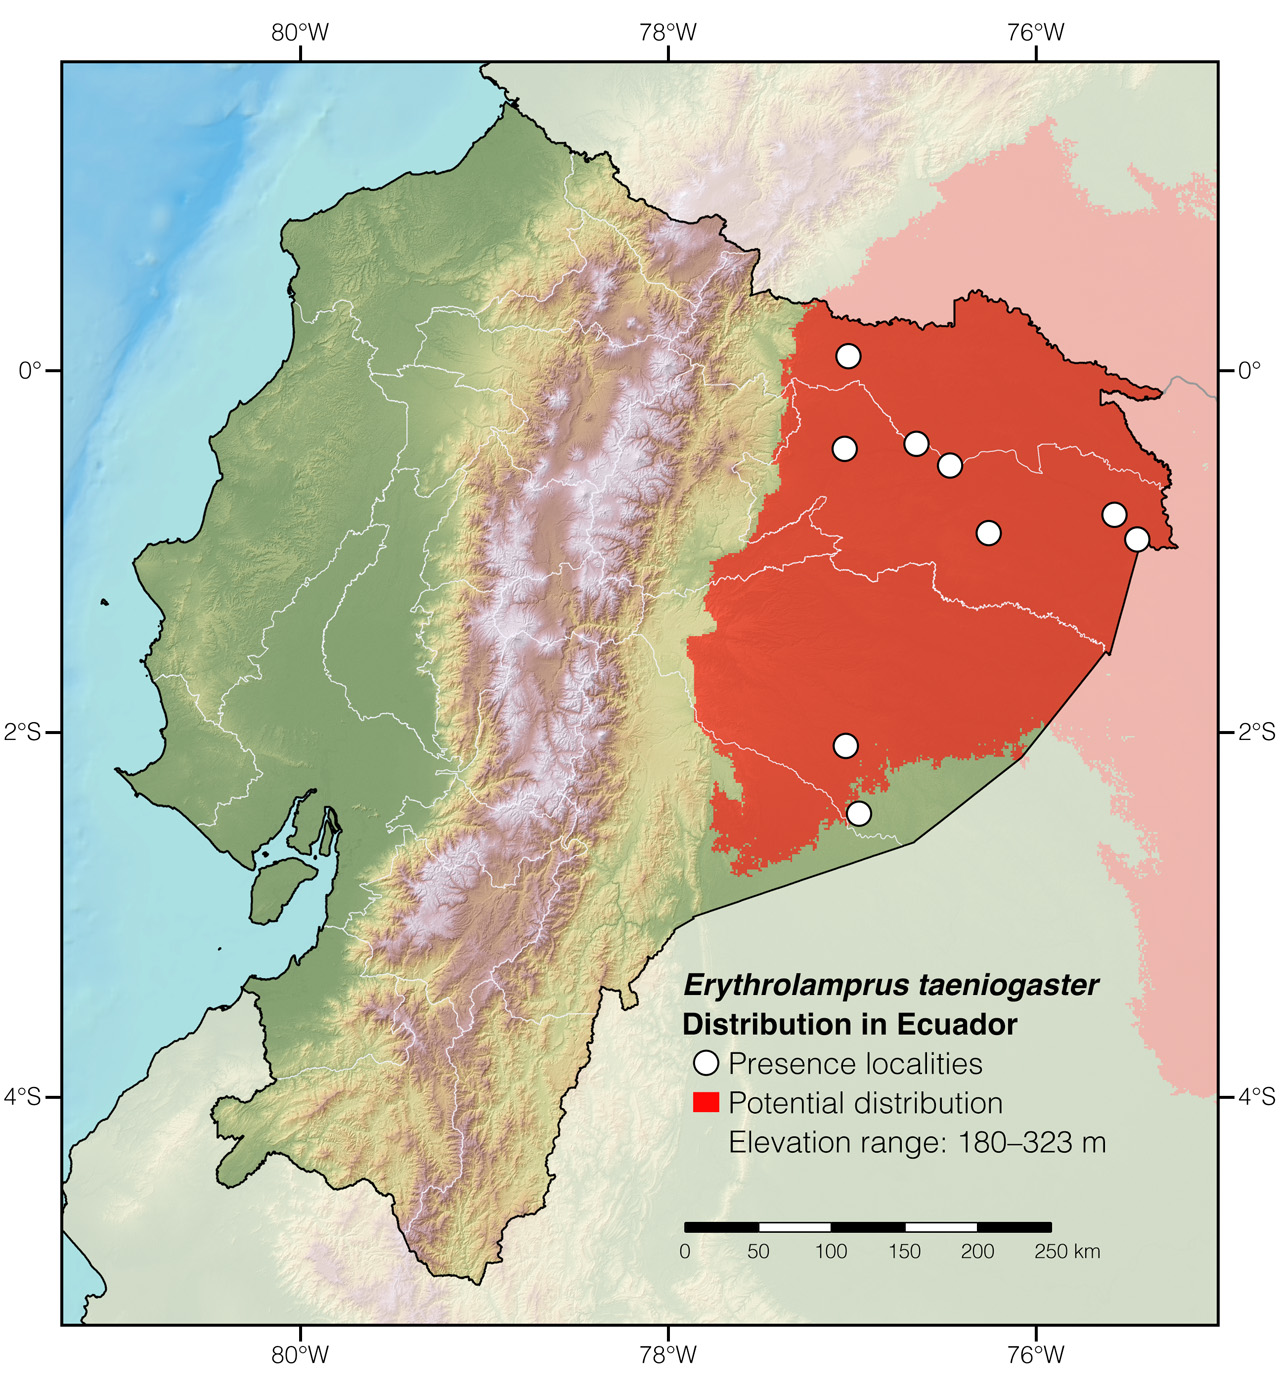 Distribution of Erythrolamprus taeniogaster in Ecuador